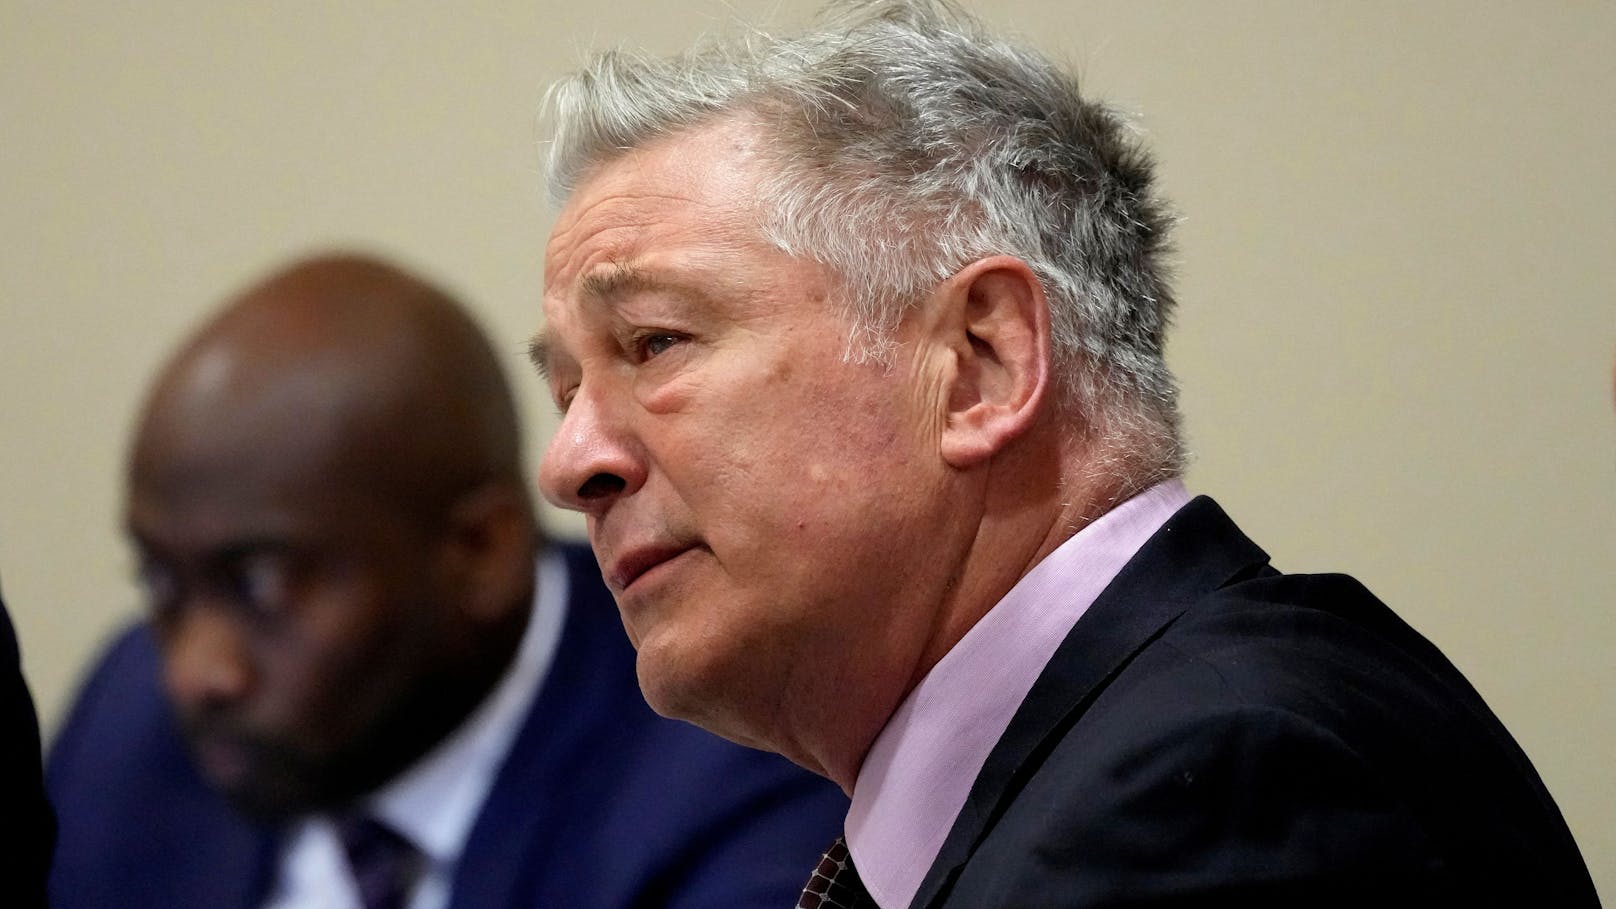 Vorwürfe gegen Baldwin: "Nicht an Anweisungen gehalten"